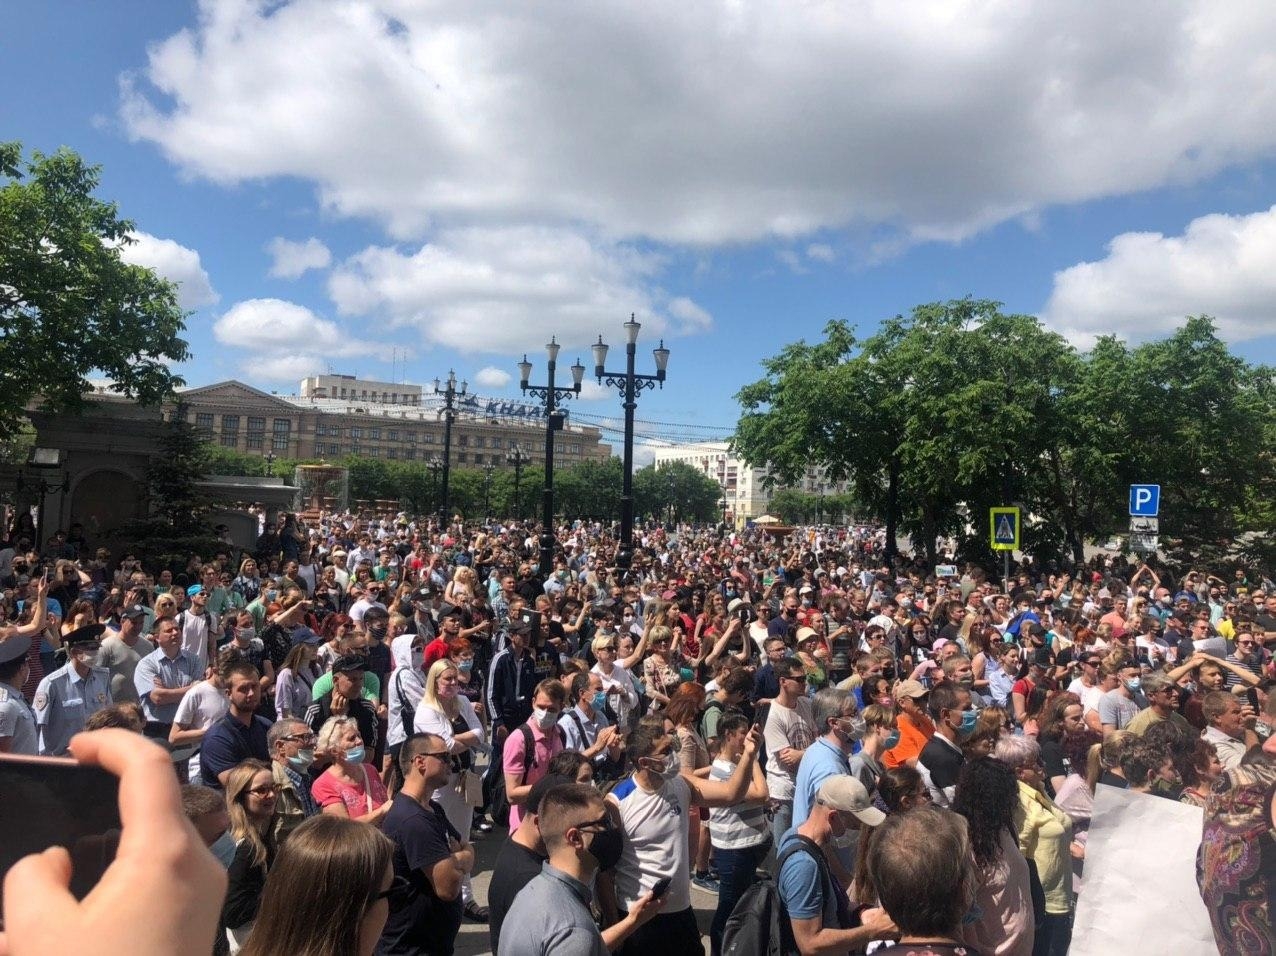 В Хабаровске в акции в поддержку арестованного губернатора Фургала участвовали до 12 тыс. человек - УМВД